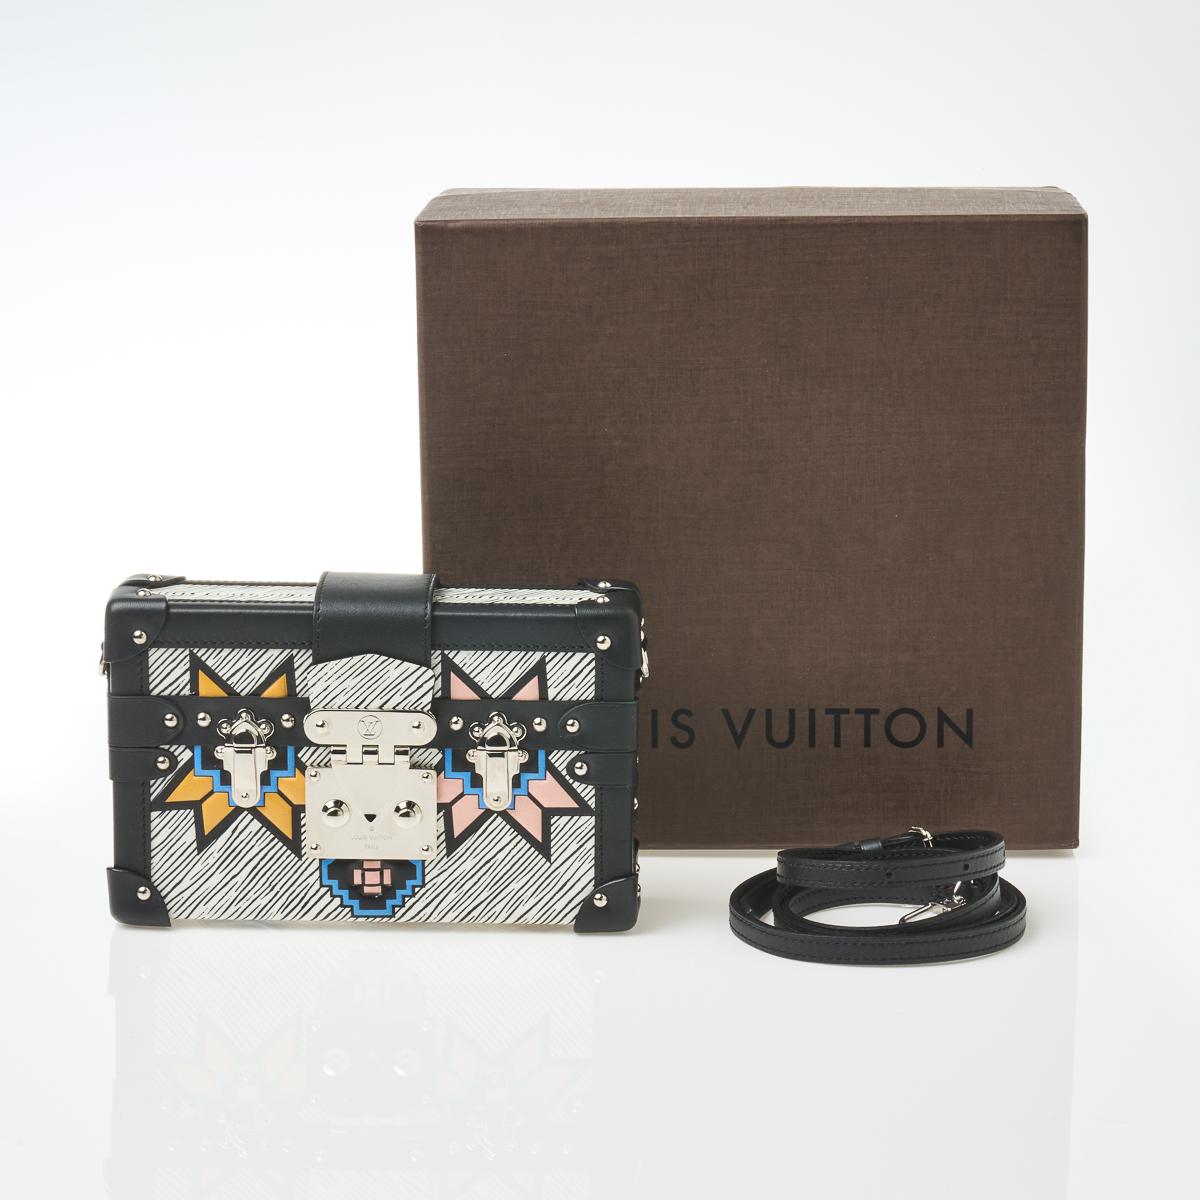 Louis Vuitton Limited Edition Black Epi Leather Petite Malle Bag